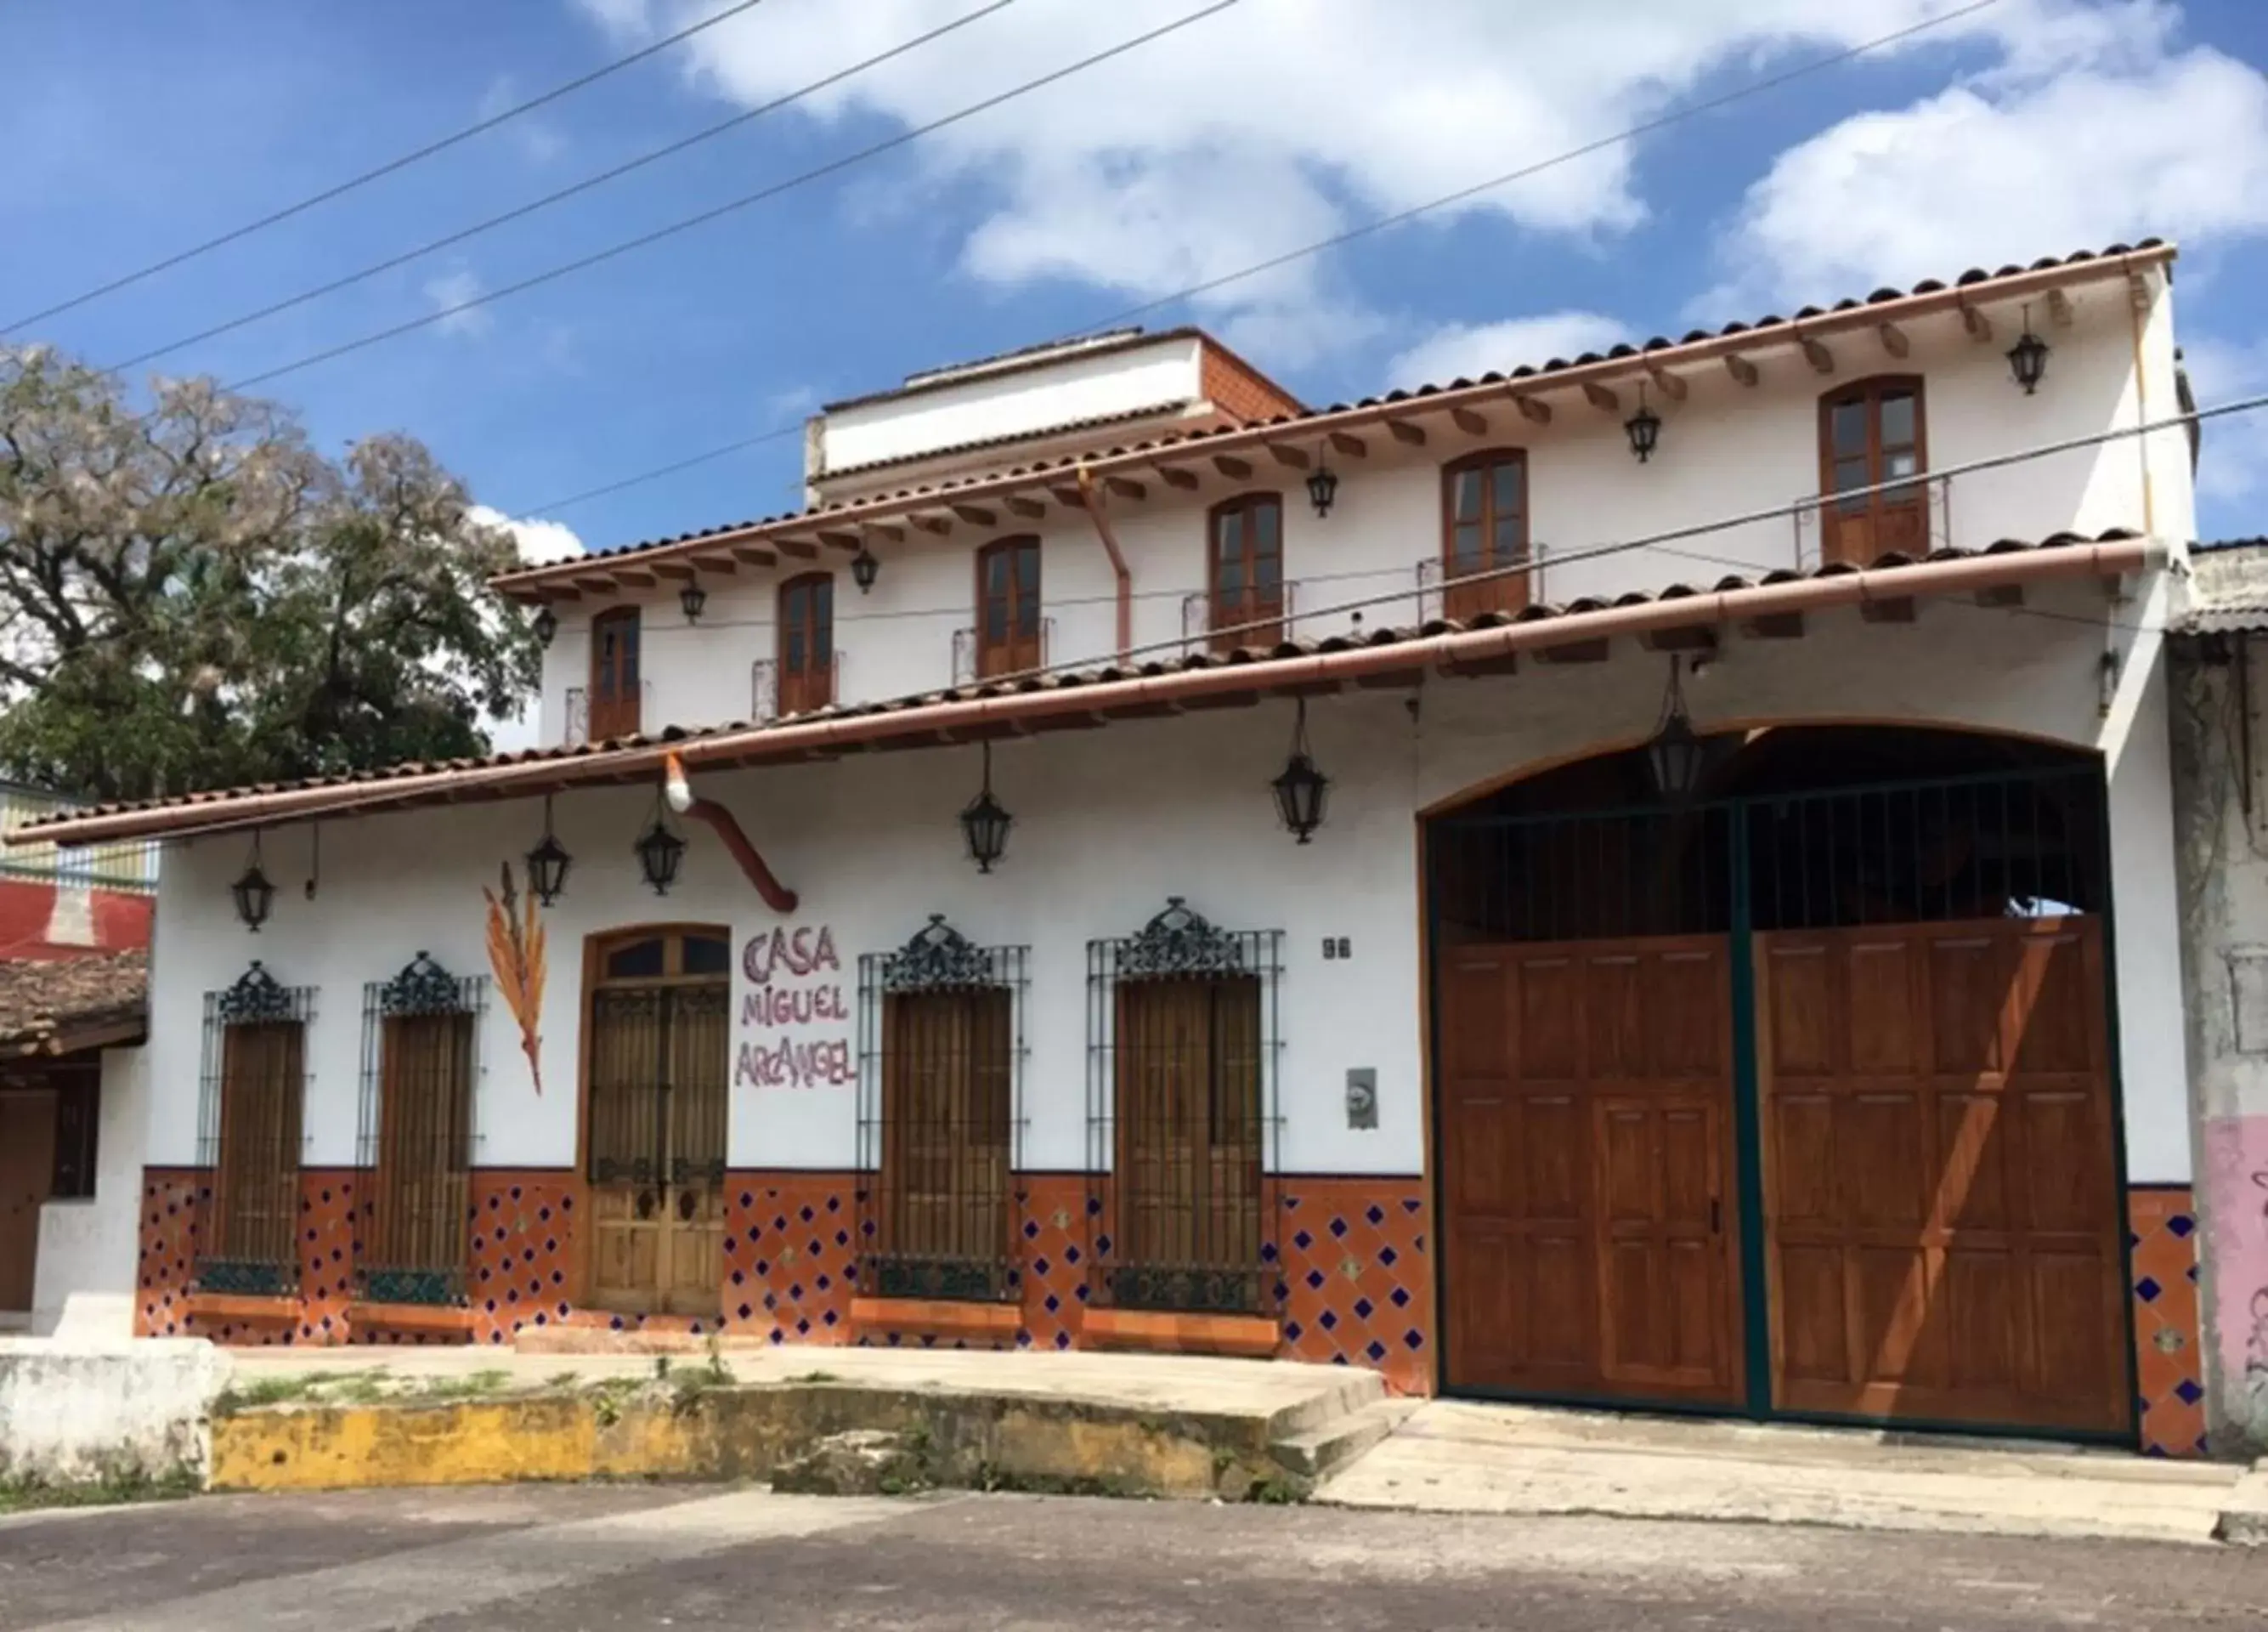 Facade/entrance, Property Building in Casa Miguel Arcangel